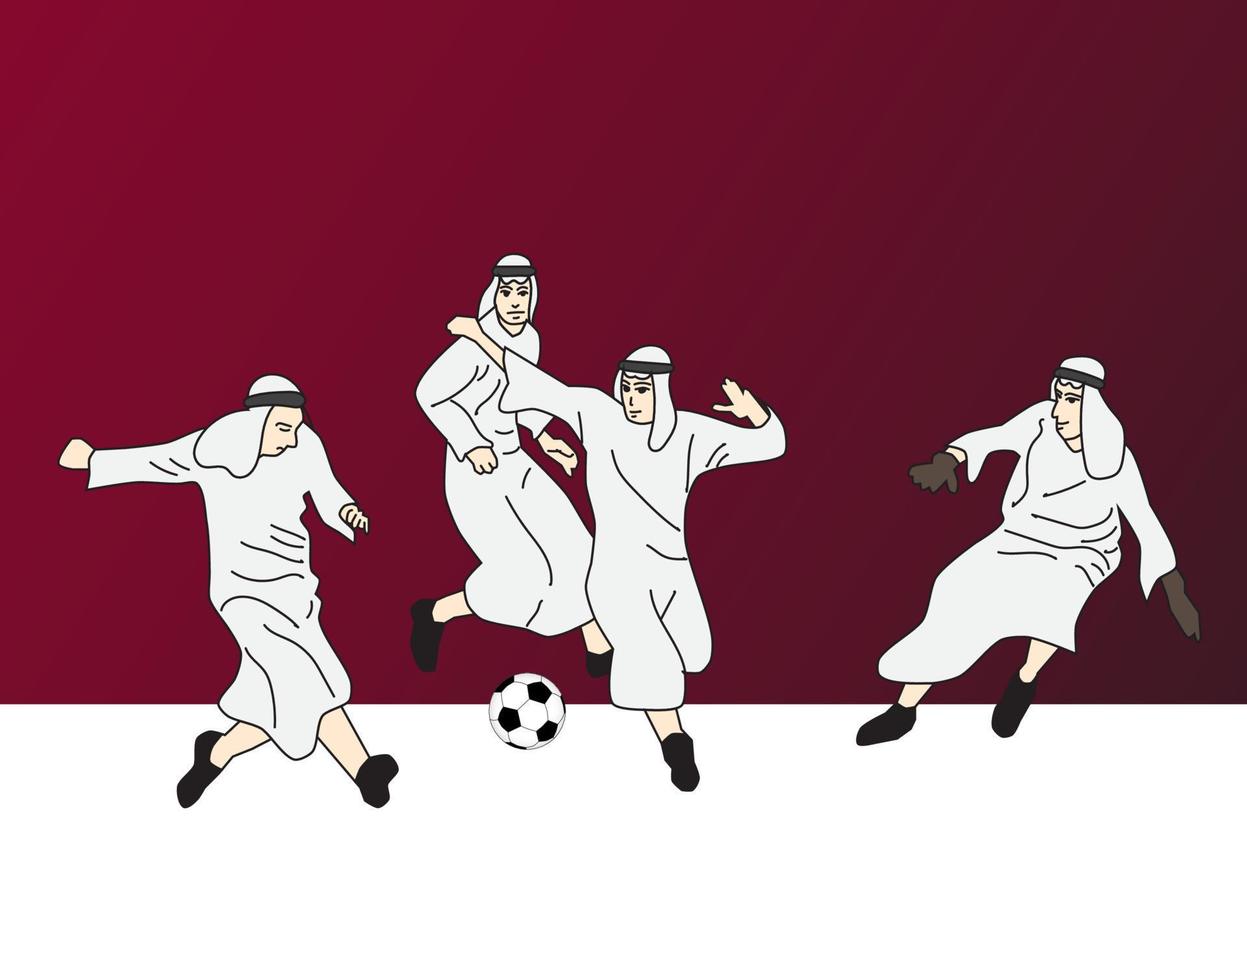 Qatar Football 2022 Illustration vector